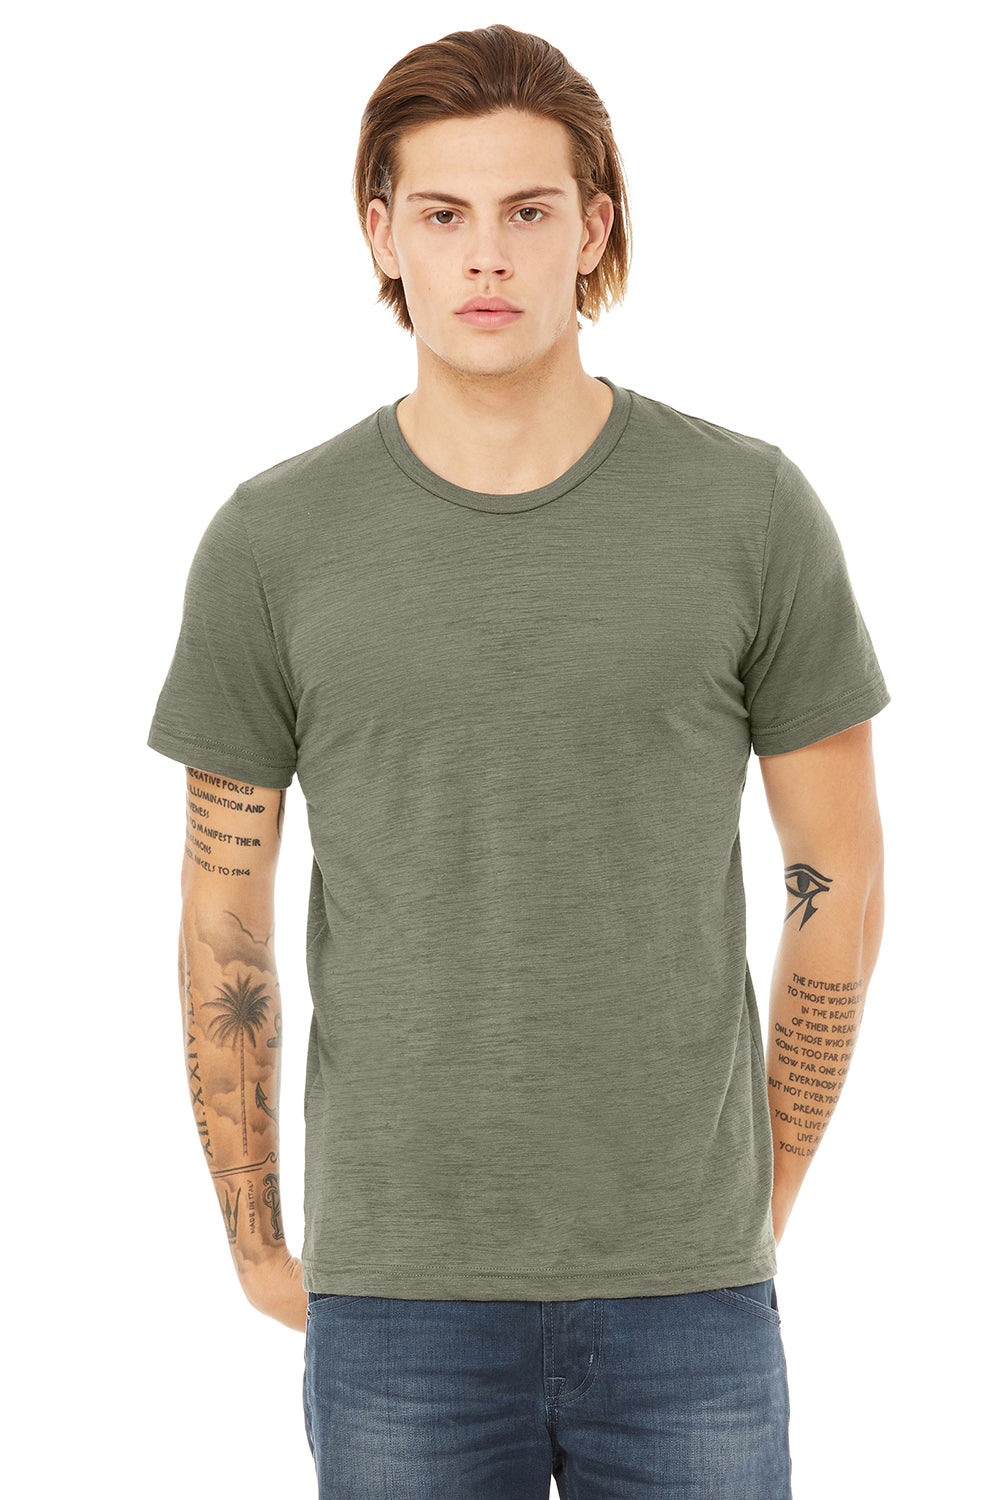 Bella + Canvas 3650 Mens Short Sleeve Crewneck T-Shirt Olive Green Slub Front